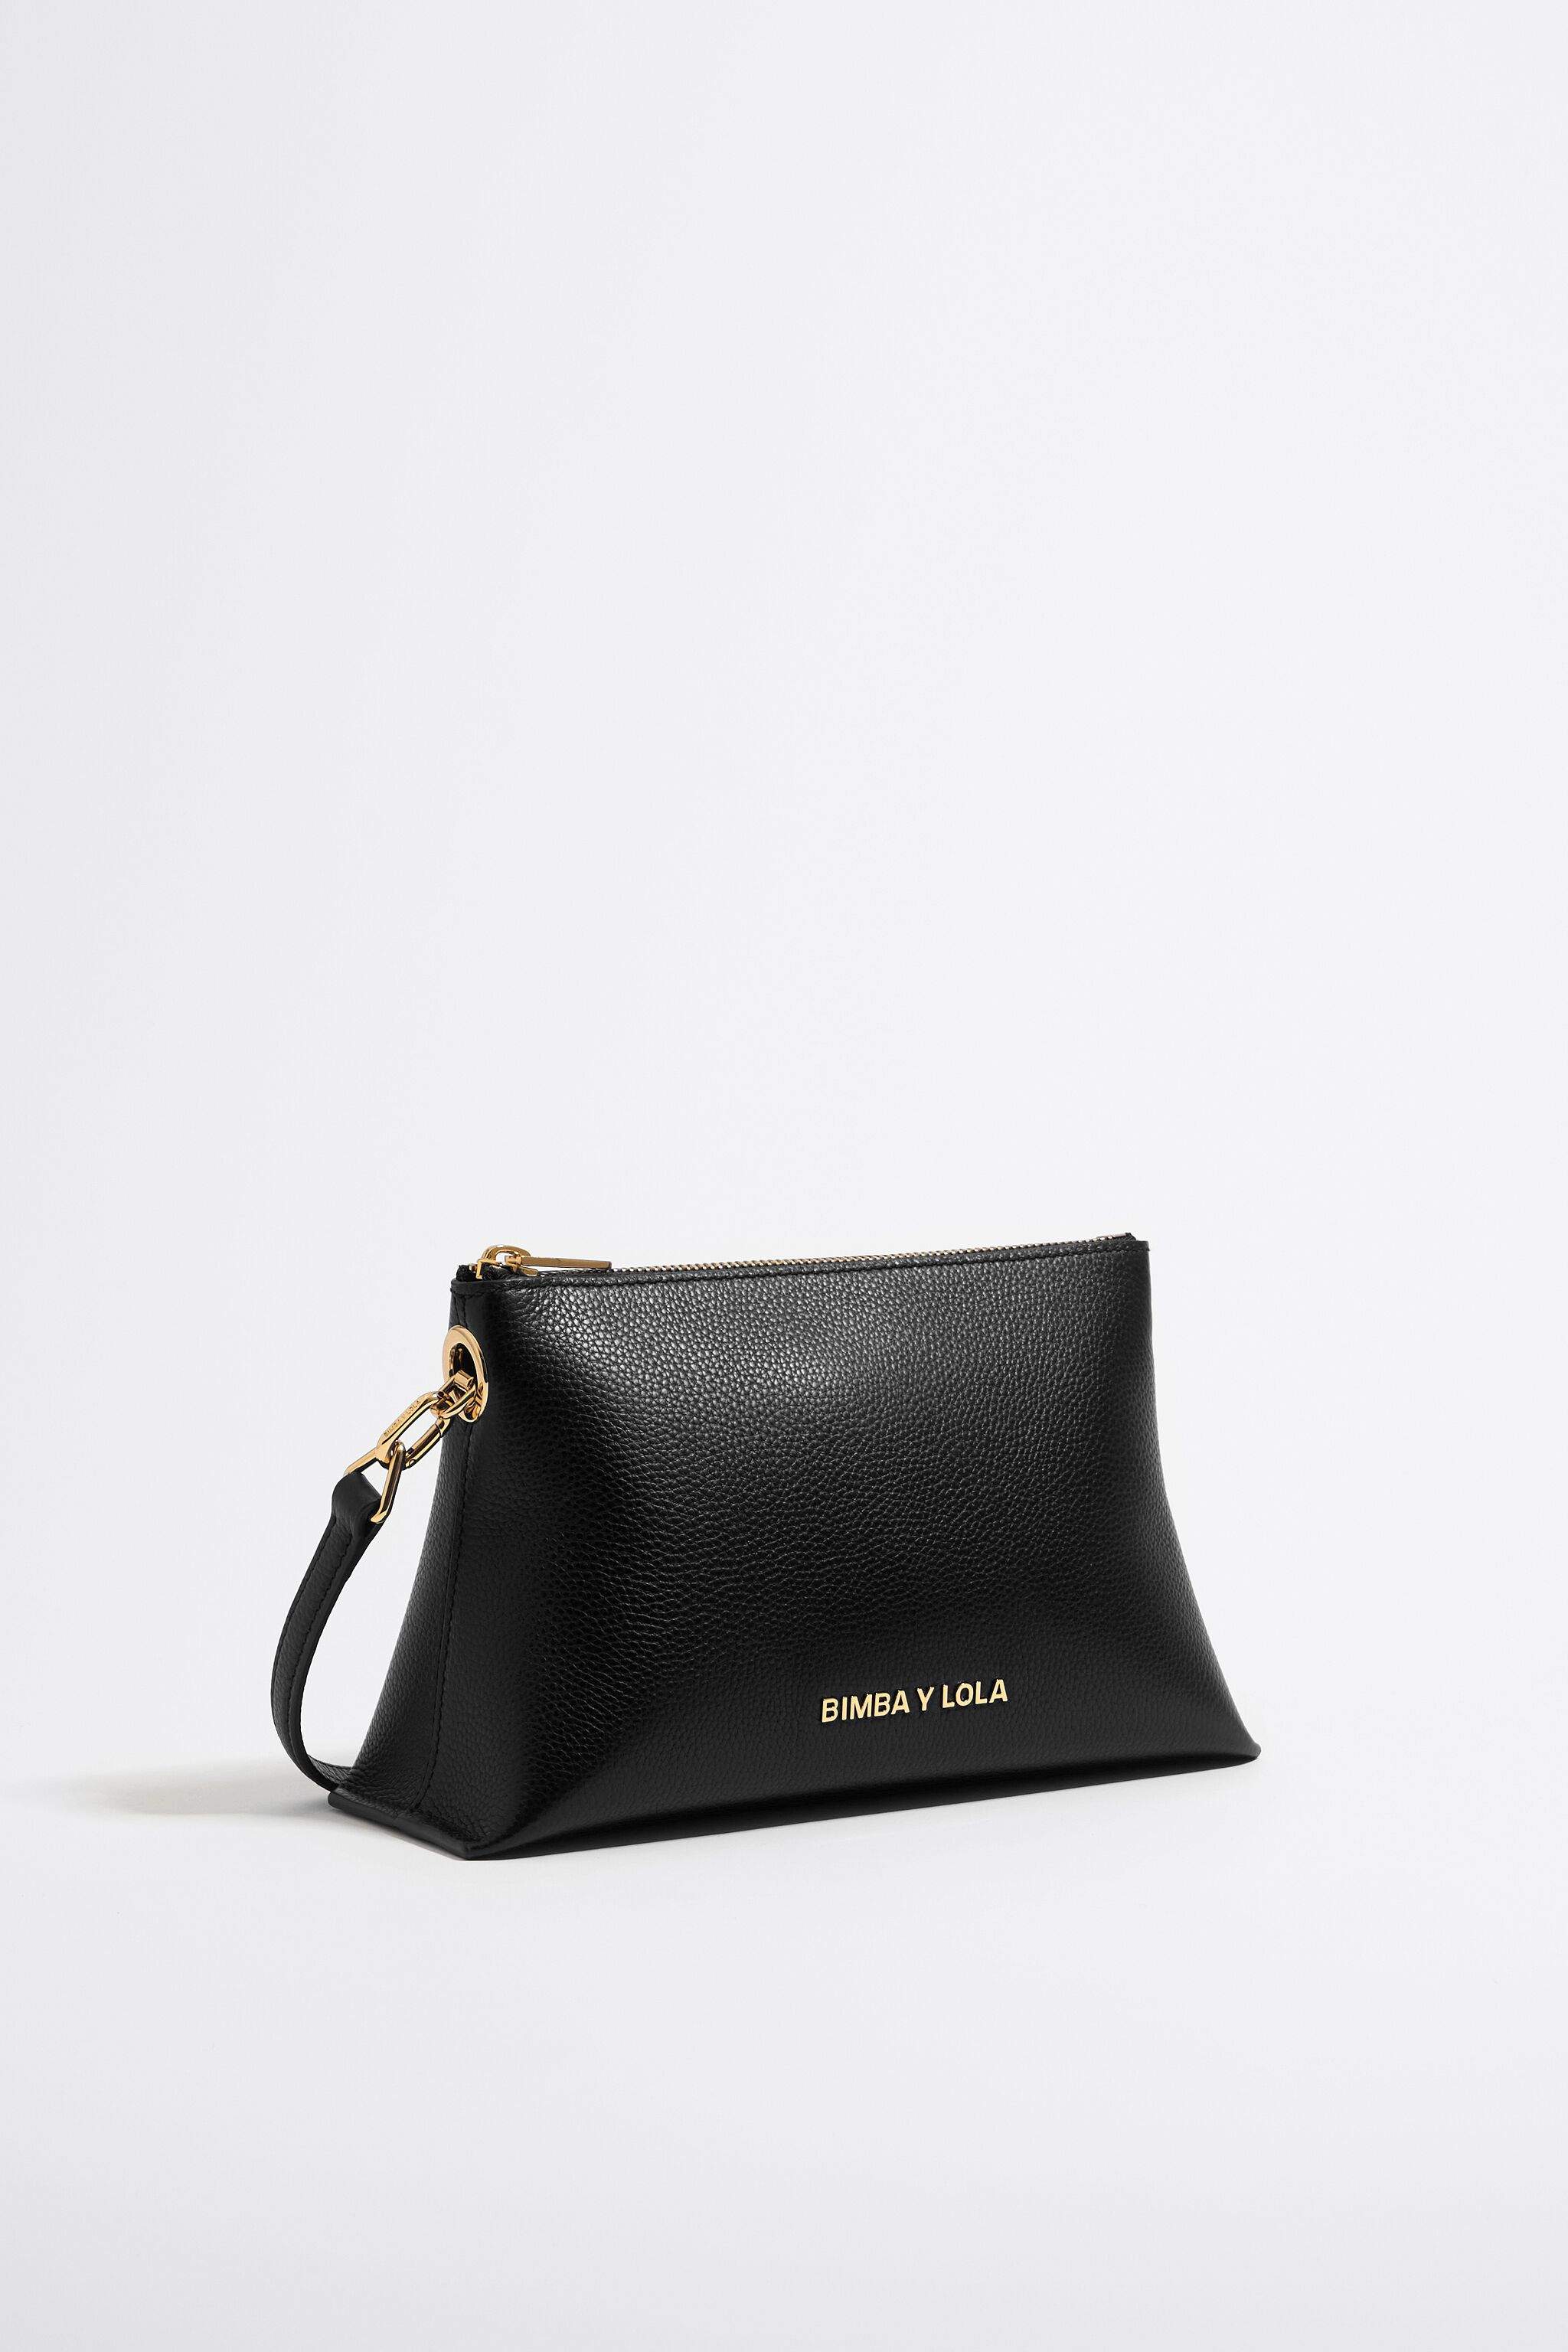 Mini Handbag Shoulder Crossbody Bag Small Purses for Women(Black) -  Walmart.com